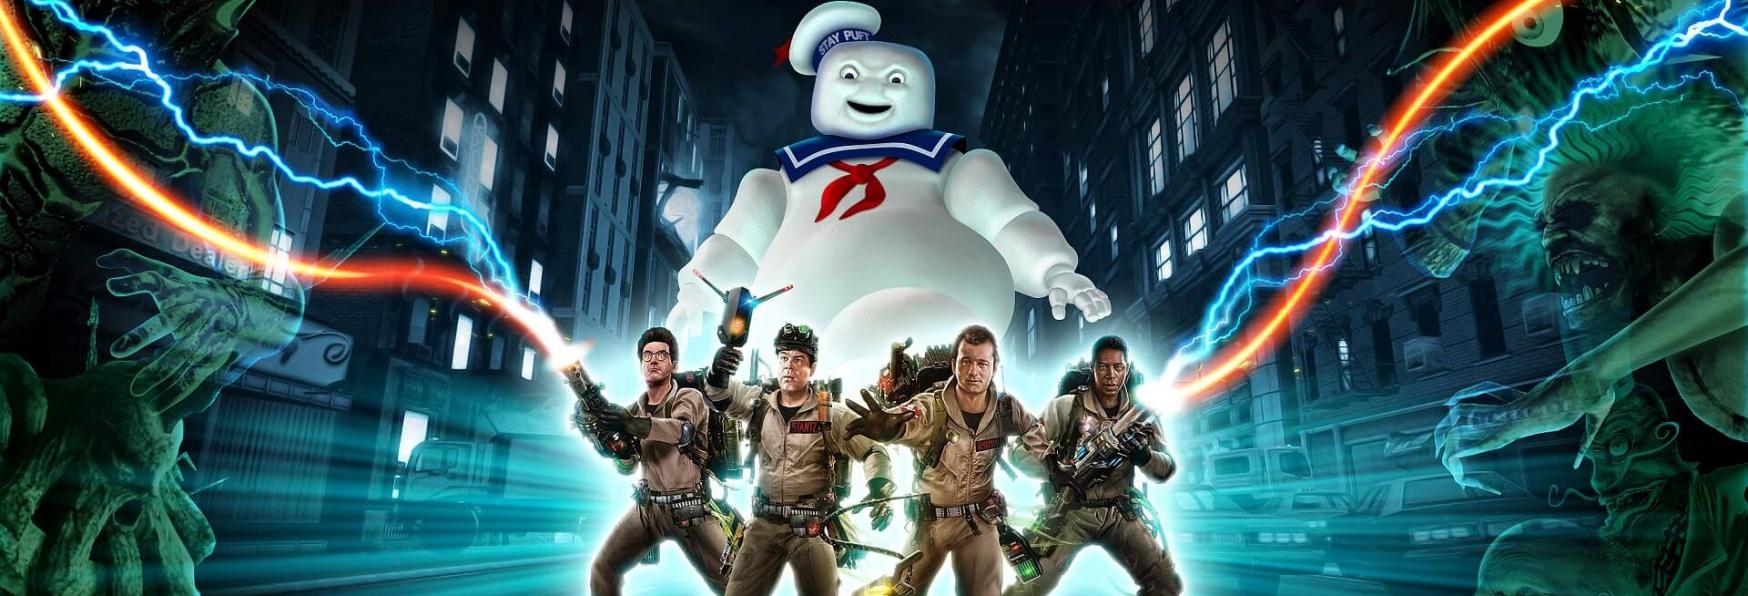 Ghostbusters: Netflix è al lavoro su una nuova Serie Animata